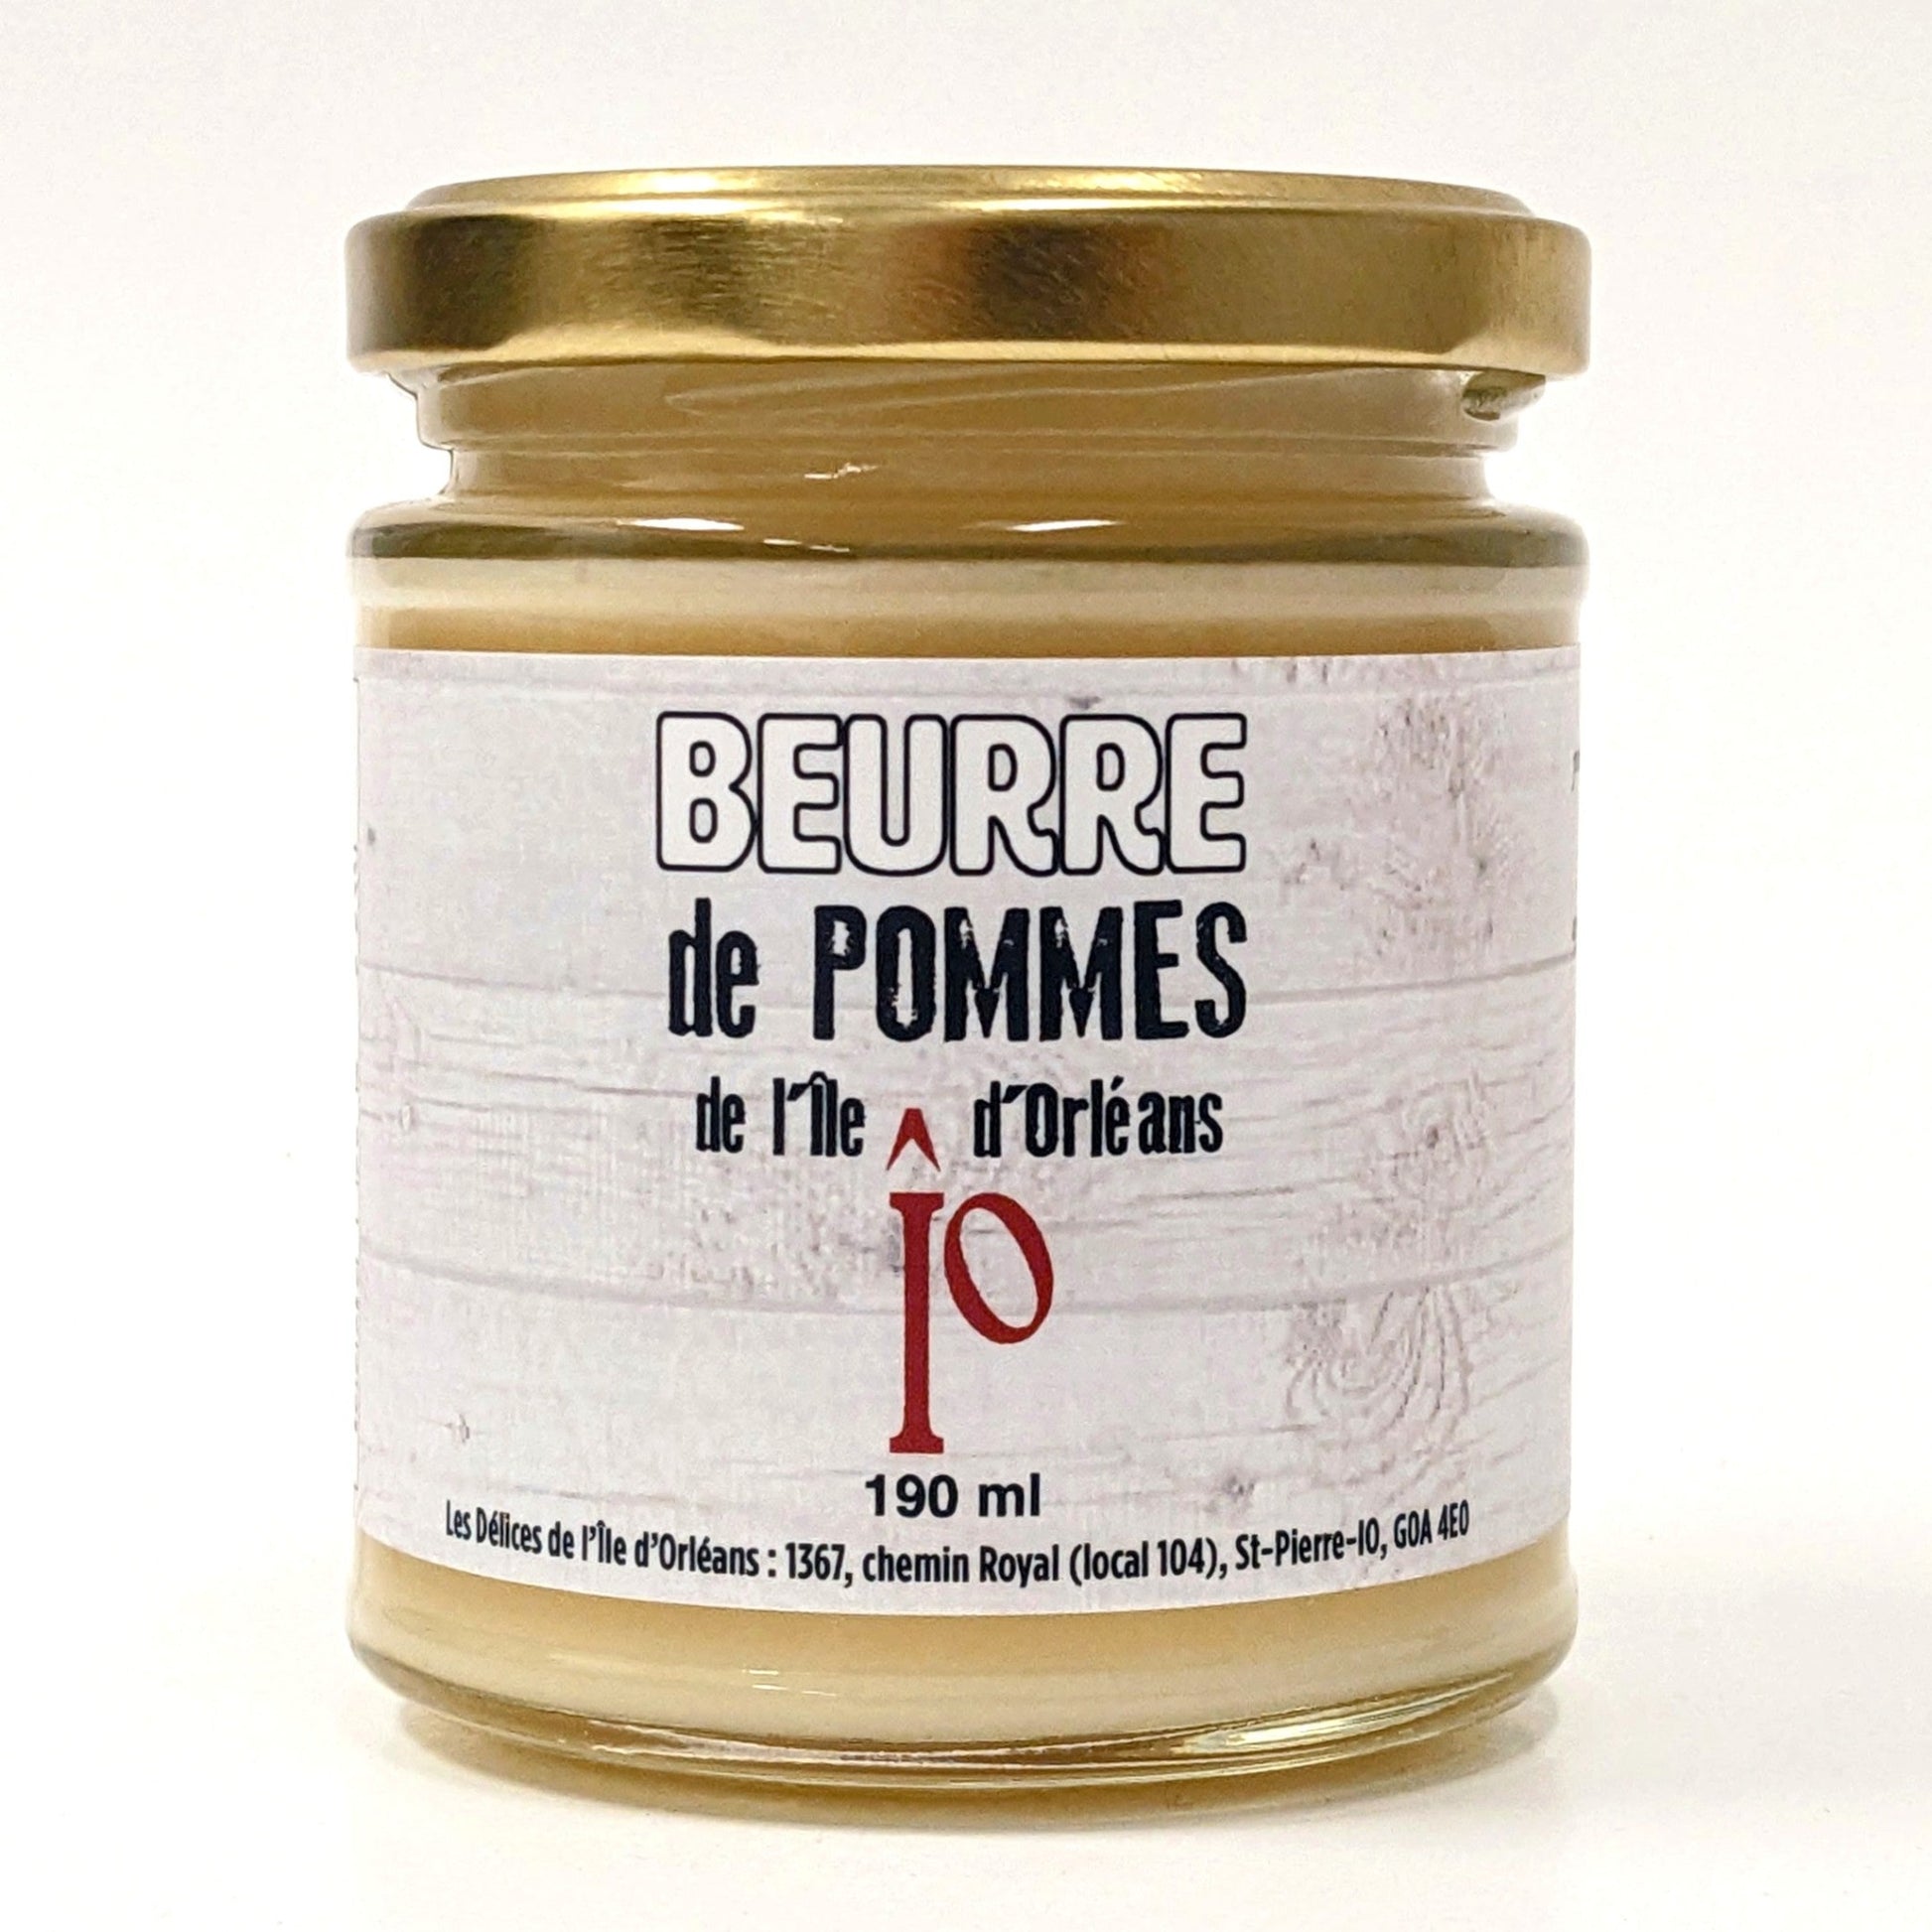 Beurre de pommes - Les Délices de l'île d'Orléans